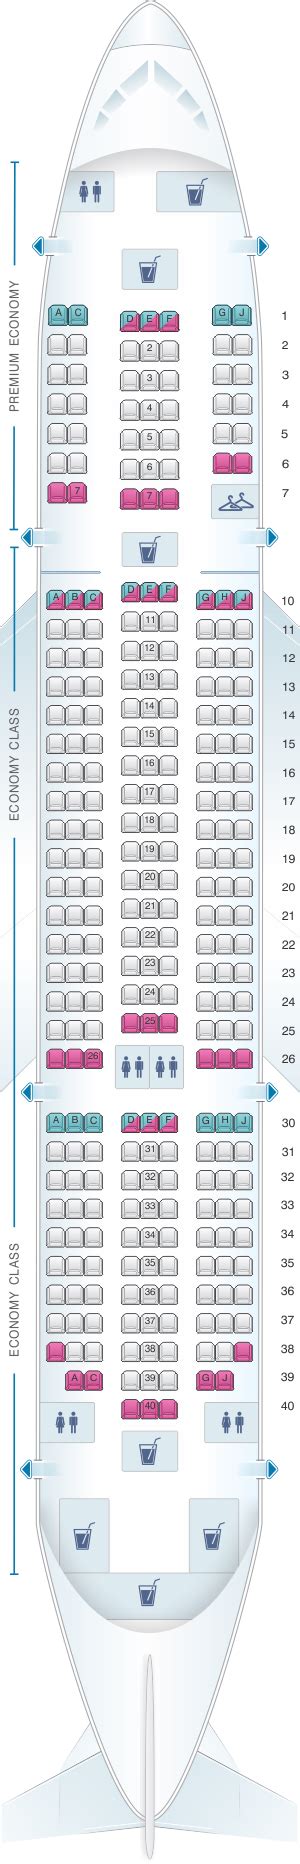 tui boeing 787-8 dreamliner seat plan